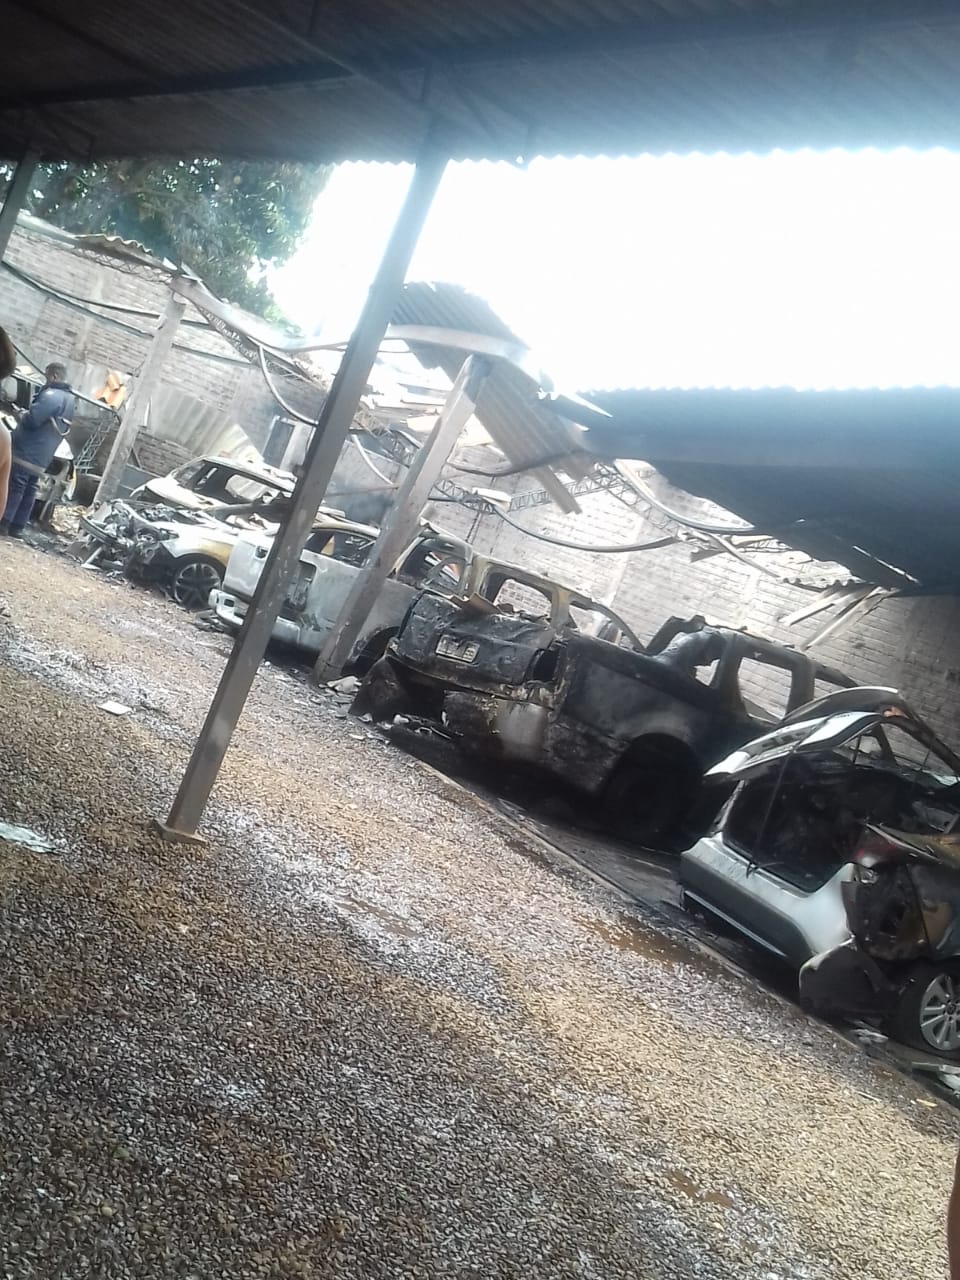 Oficina pega fogo e vários veículos ficam destruídos em Ubiratã